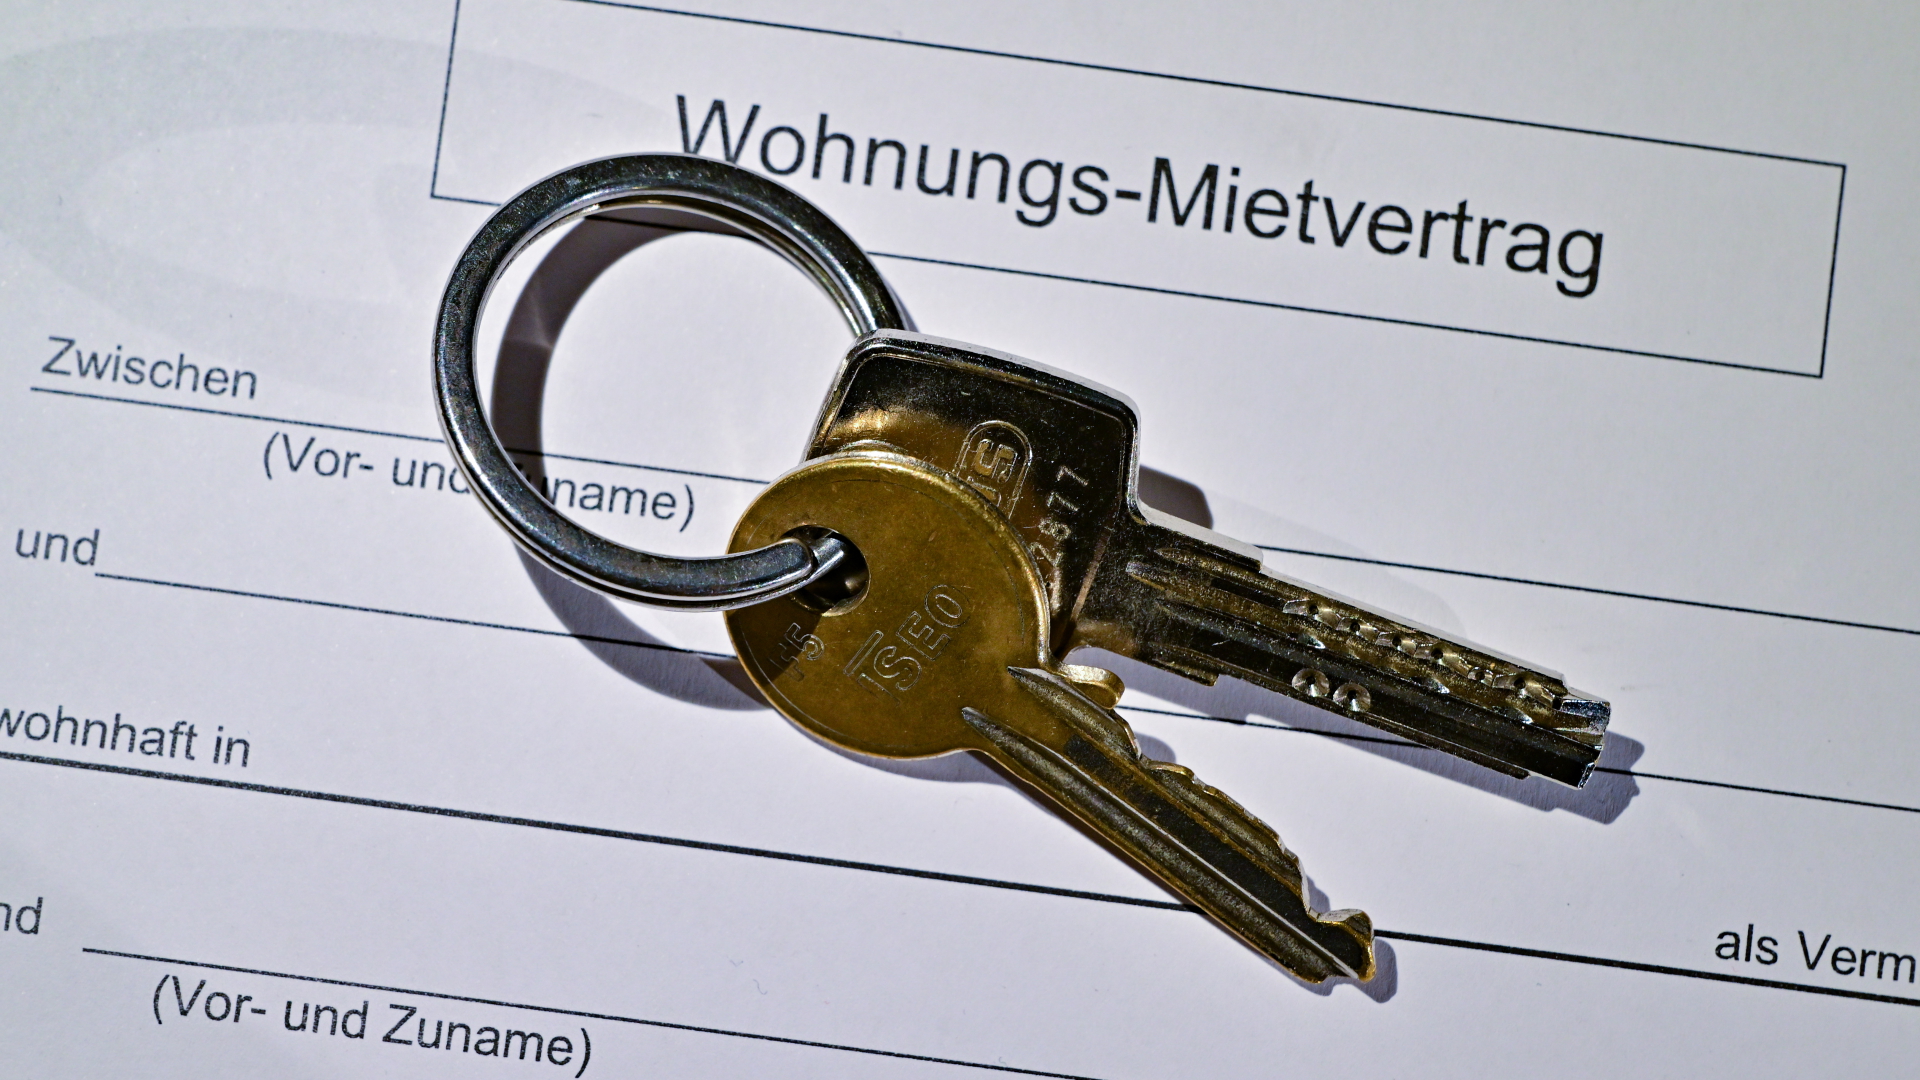 Ein Wohnungsschlüssel liegt auf einem Mietvertrag für eine Wohnung.